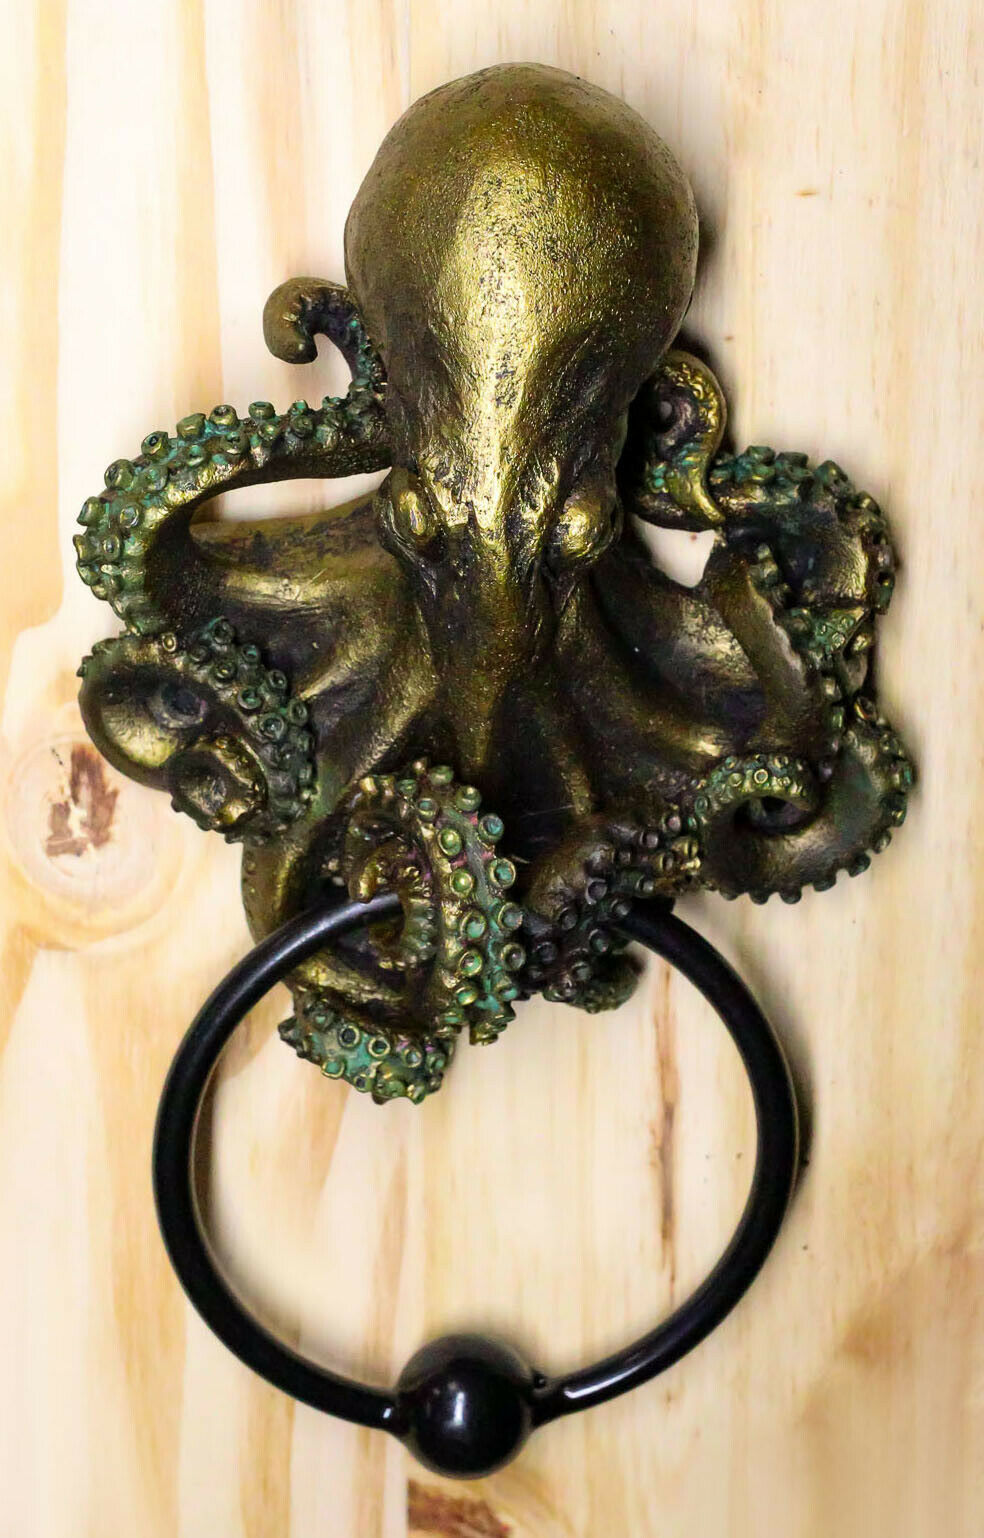 Ebros Deep Ocean Creature Octopus Door Knocker 8.5Tall Kraken Monster Cthulhu